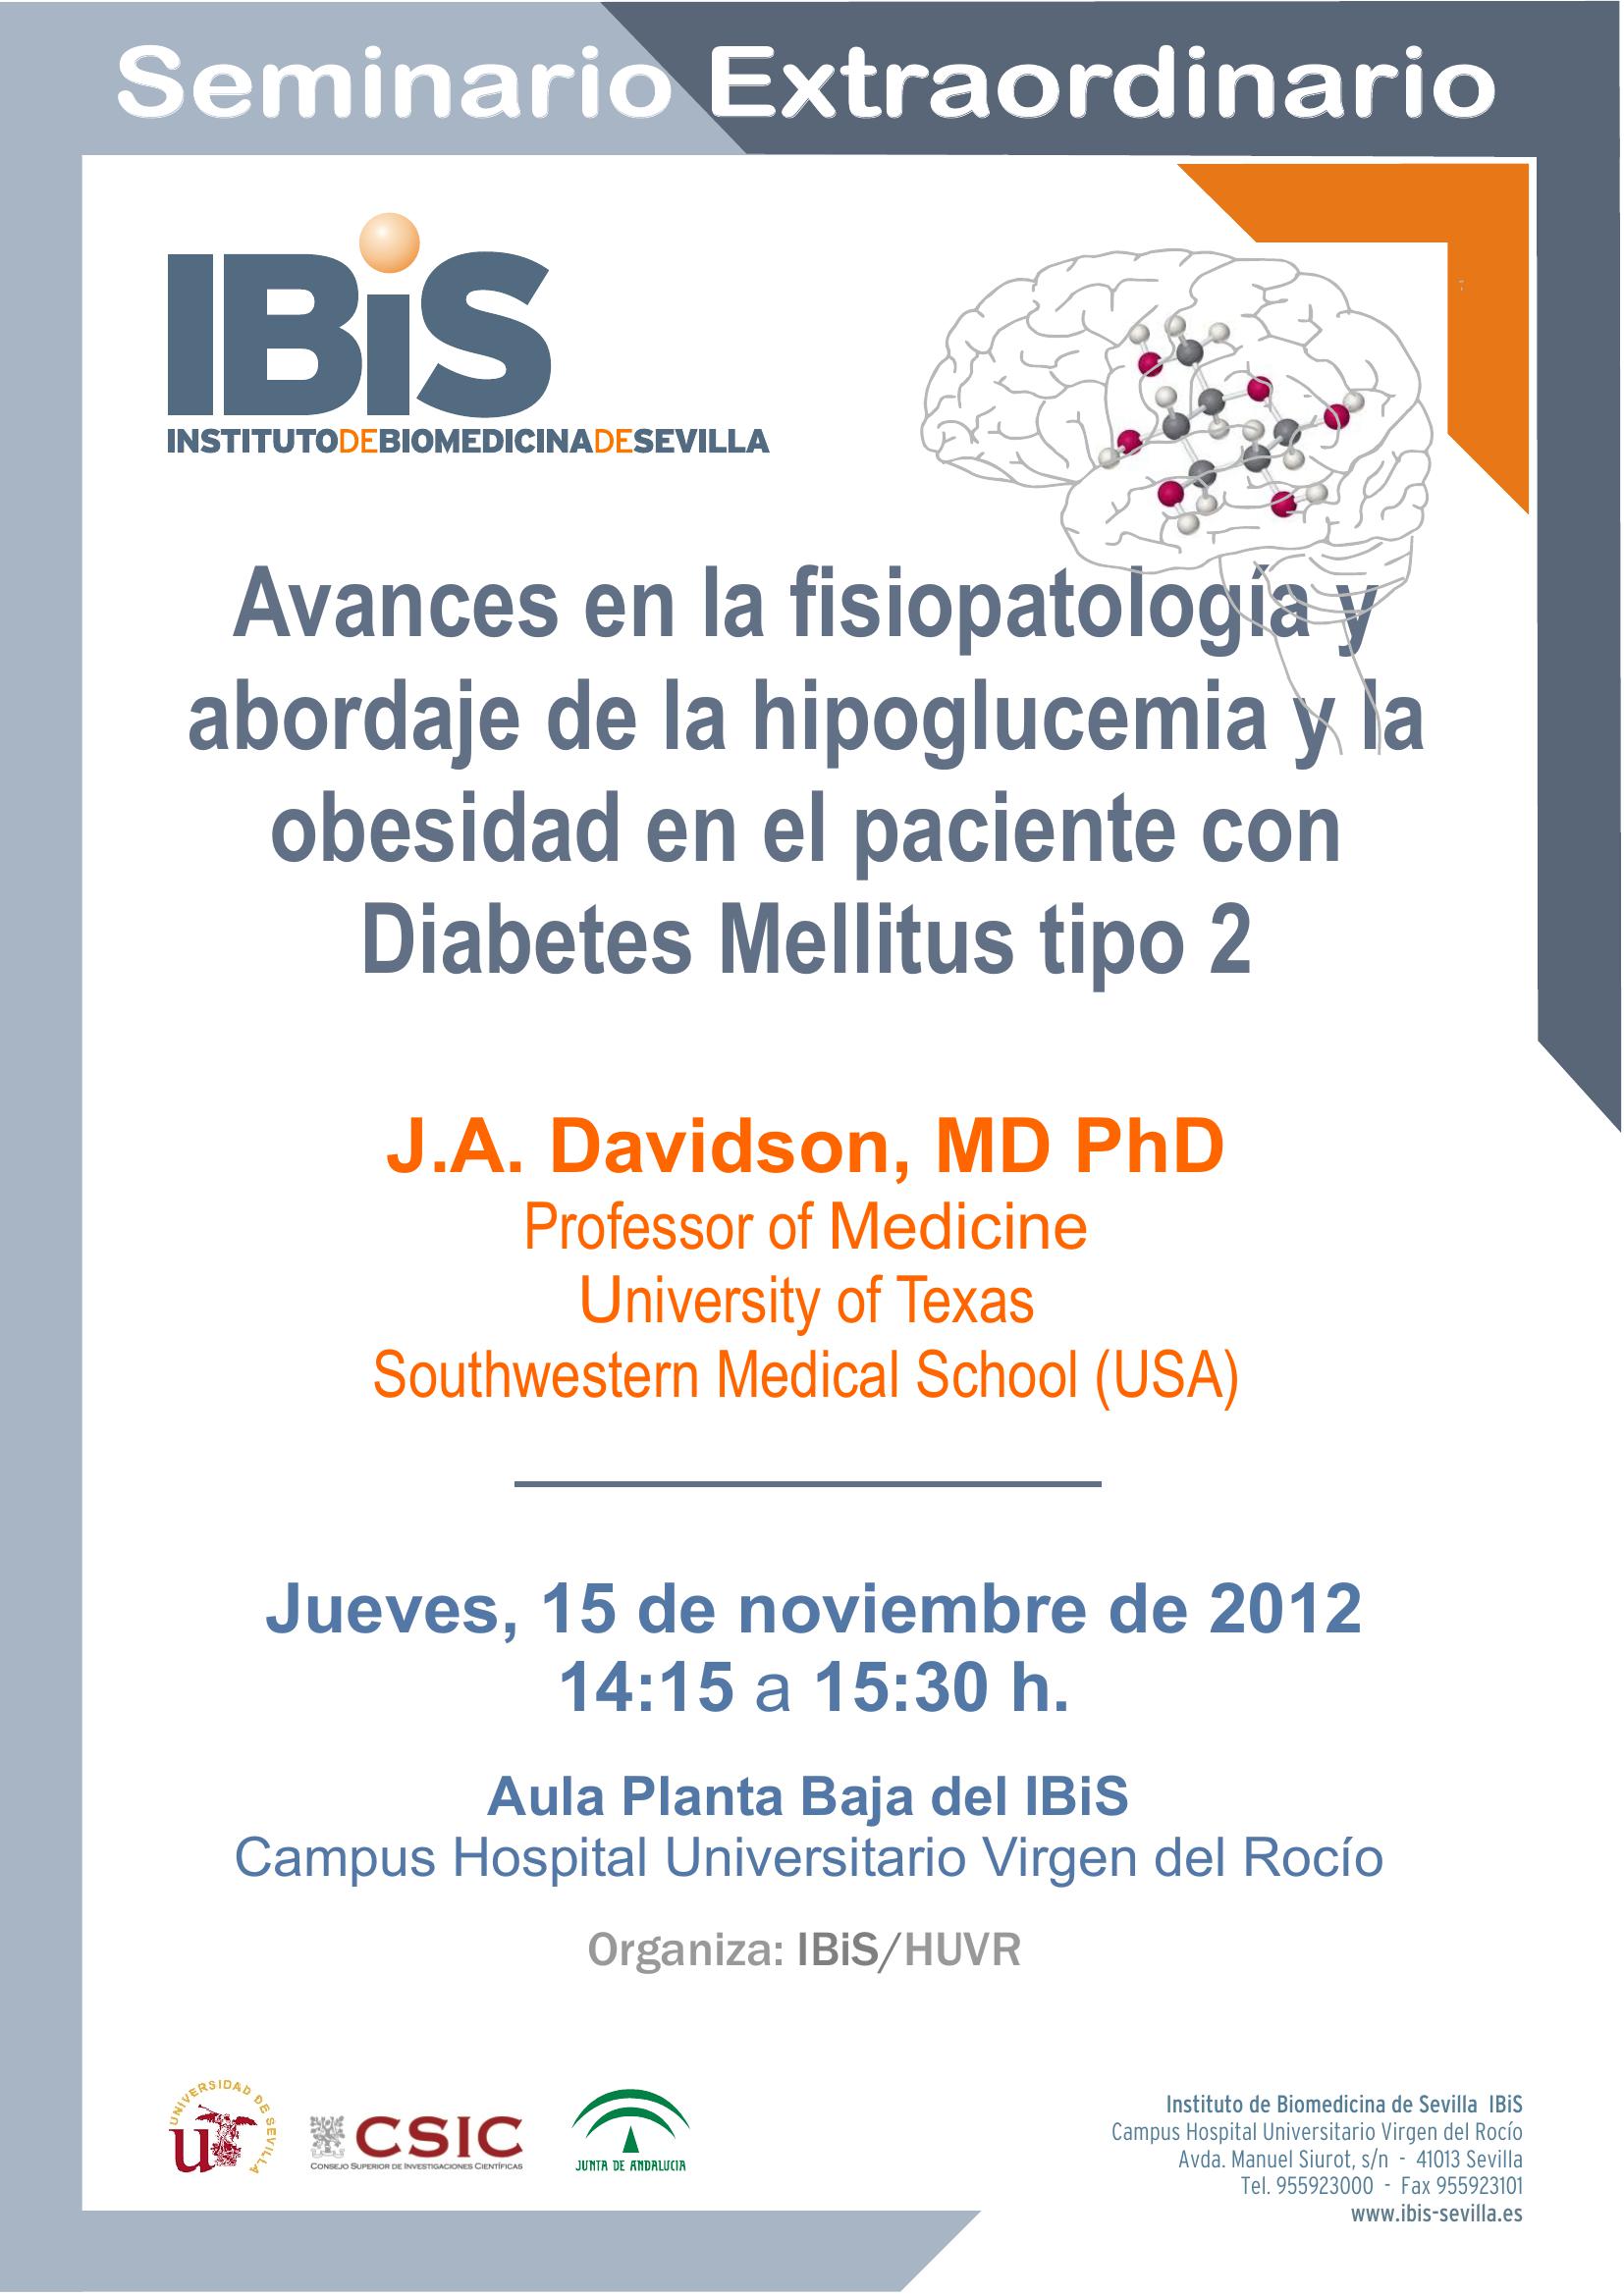 Poster: Avances en la fisiopatología y abordaje de la hipoglucemia y la obesidad en el paciente con Diabetes Mellitus tipo 2.